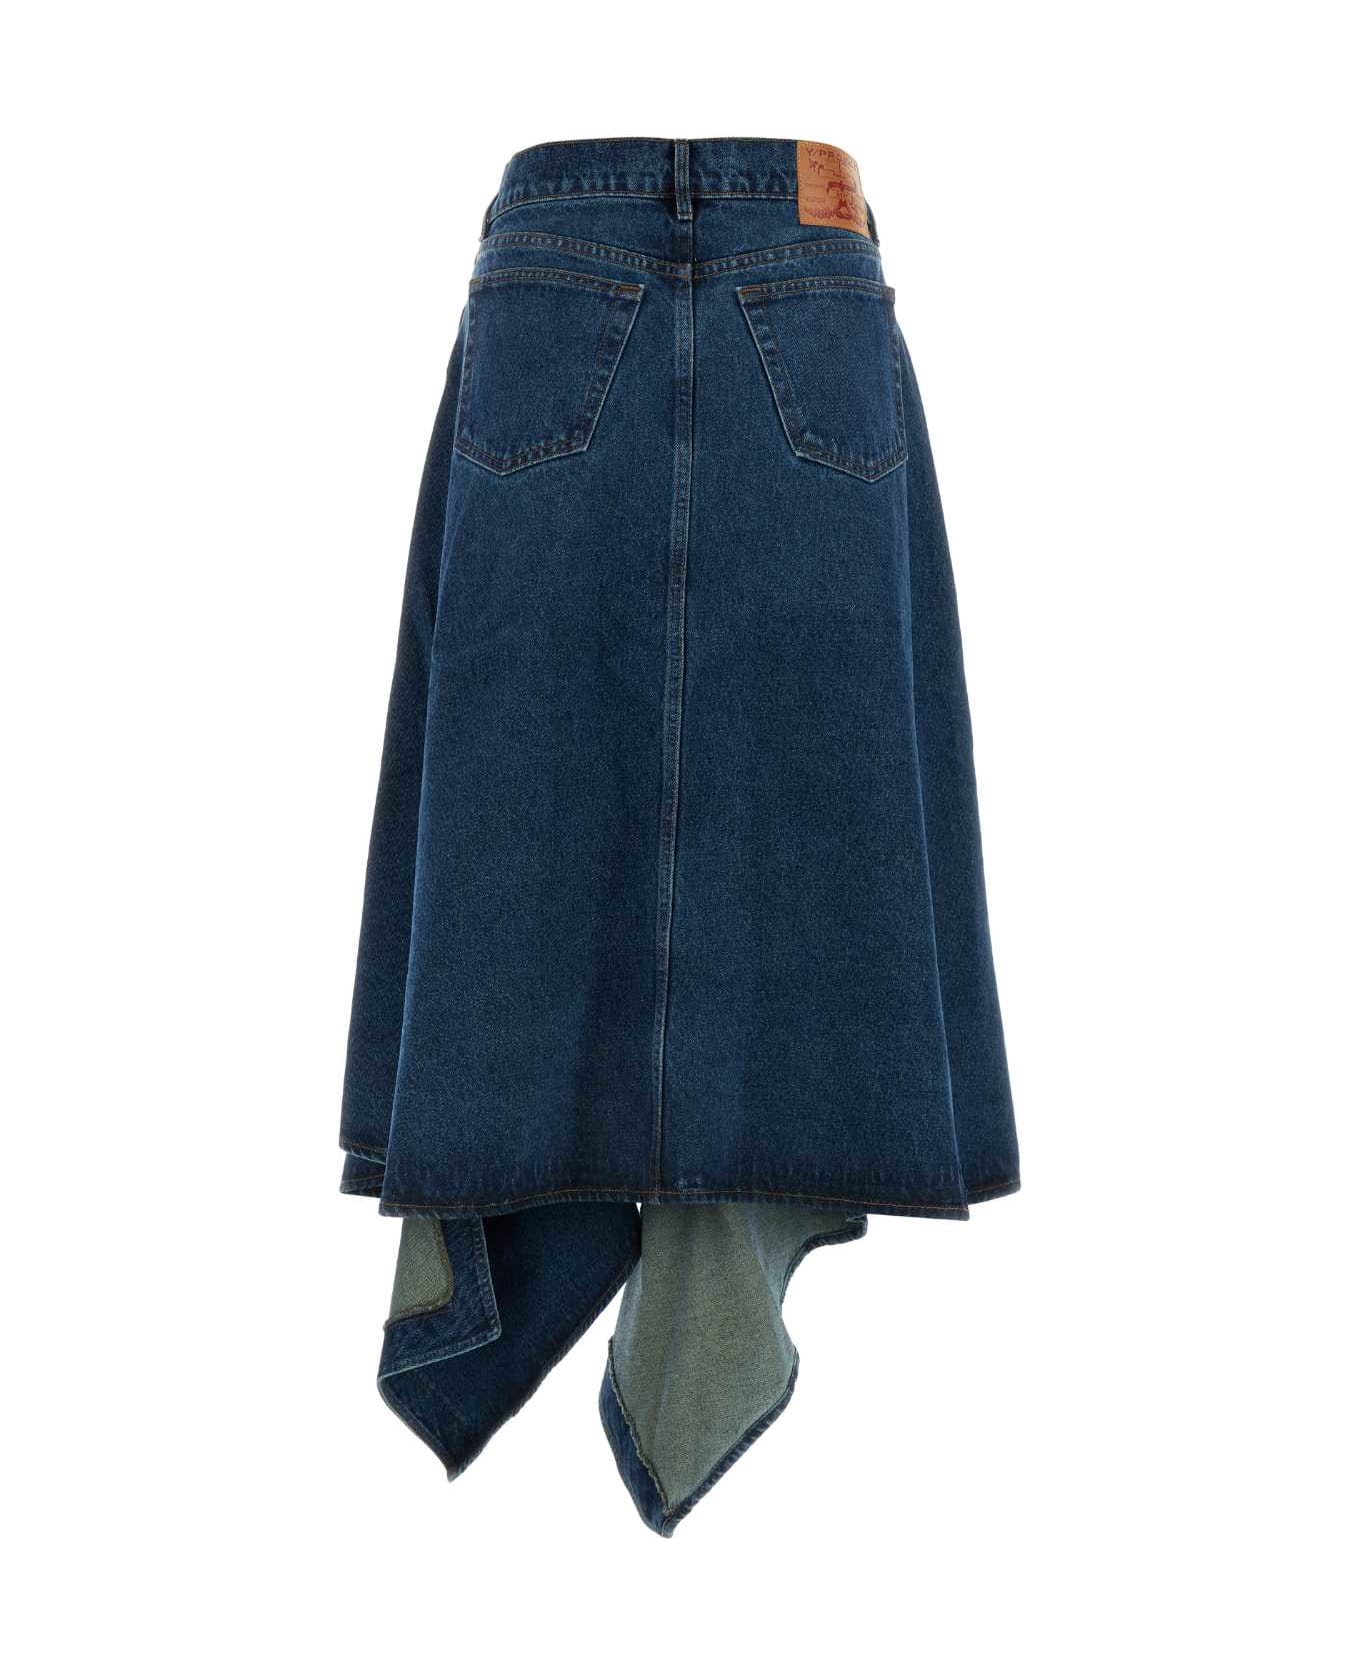 Y/Project Denim Skirt - EVERGREEN VINTAGE BLUE